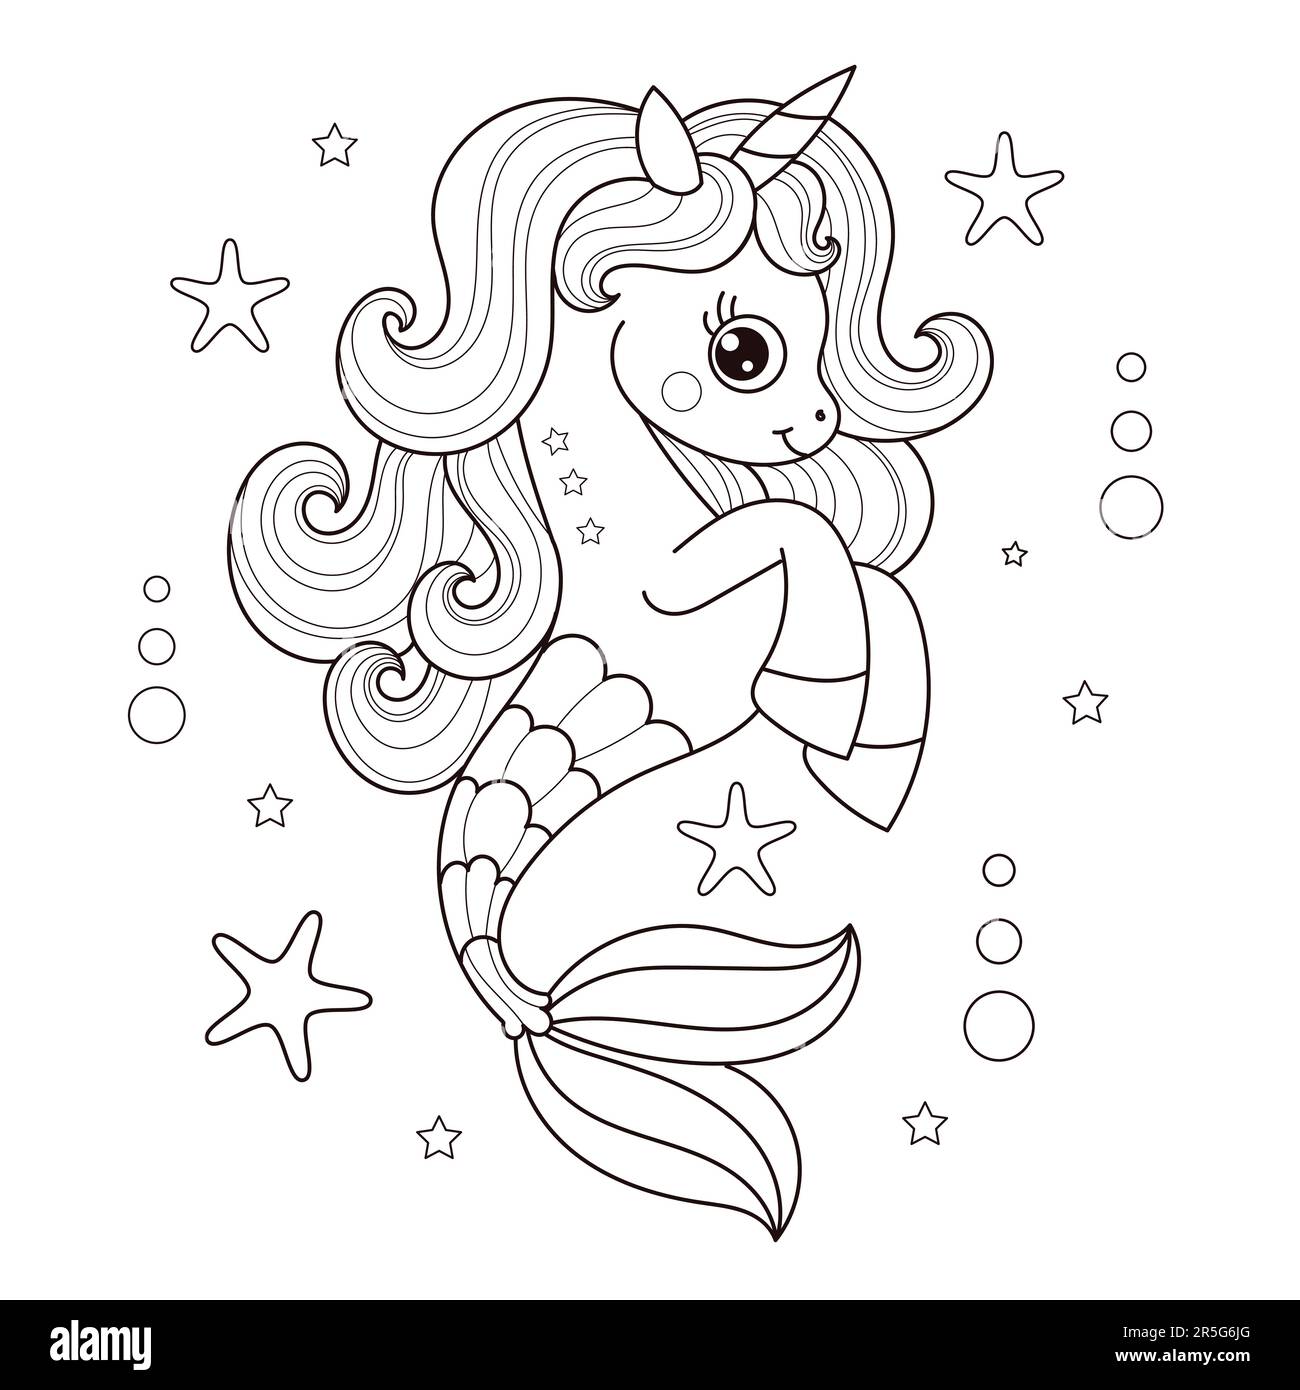 Unicorno di cavalluccio marino cartoon. Disegno lineare in bianco e nero. Per la progettazione dei bambini di libri da colorare, poster, adesivi, cartoline e così via. VECTO Illustrazione Vettoriale